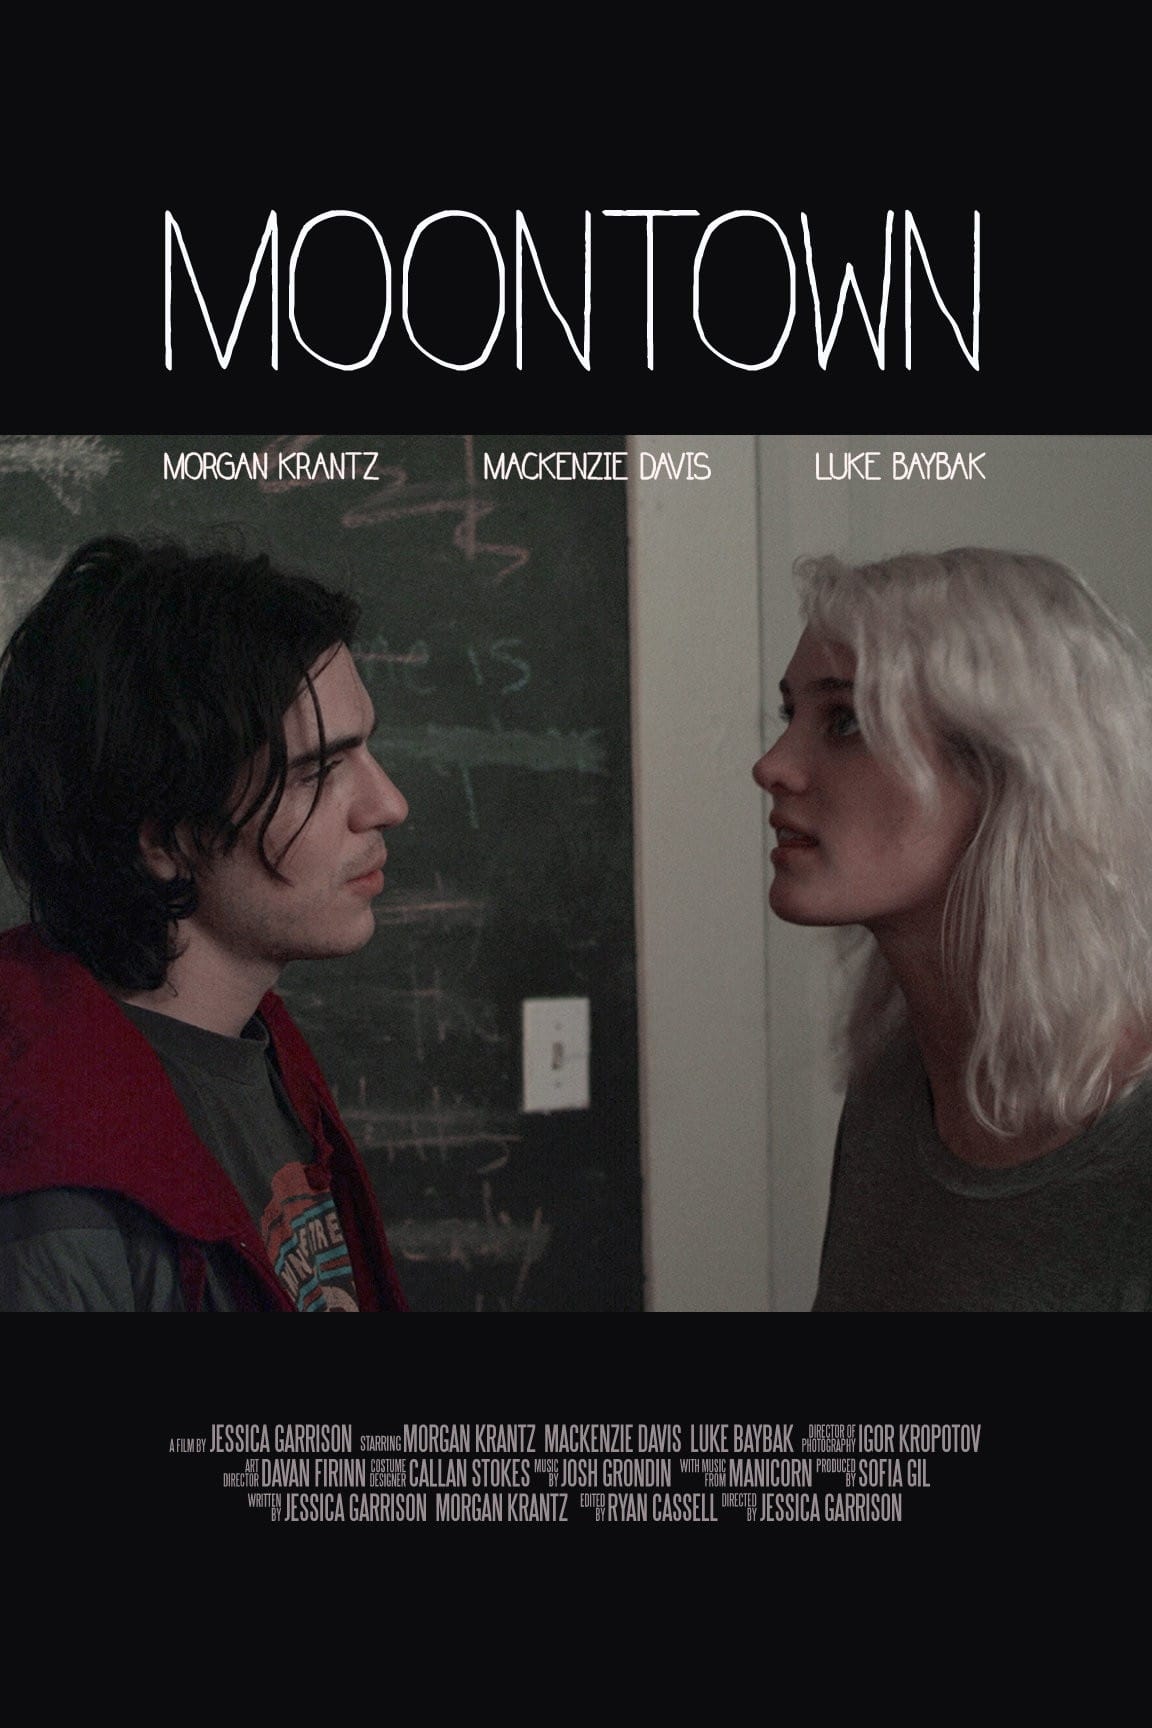 Moontown